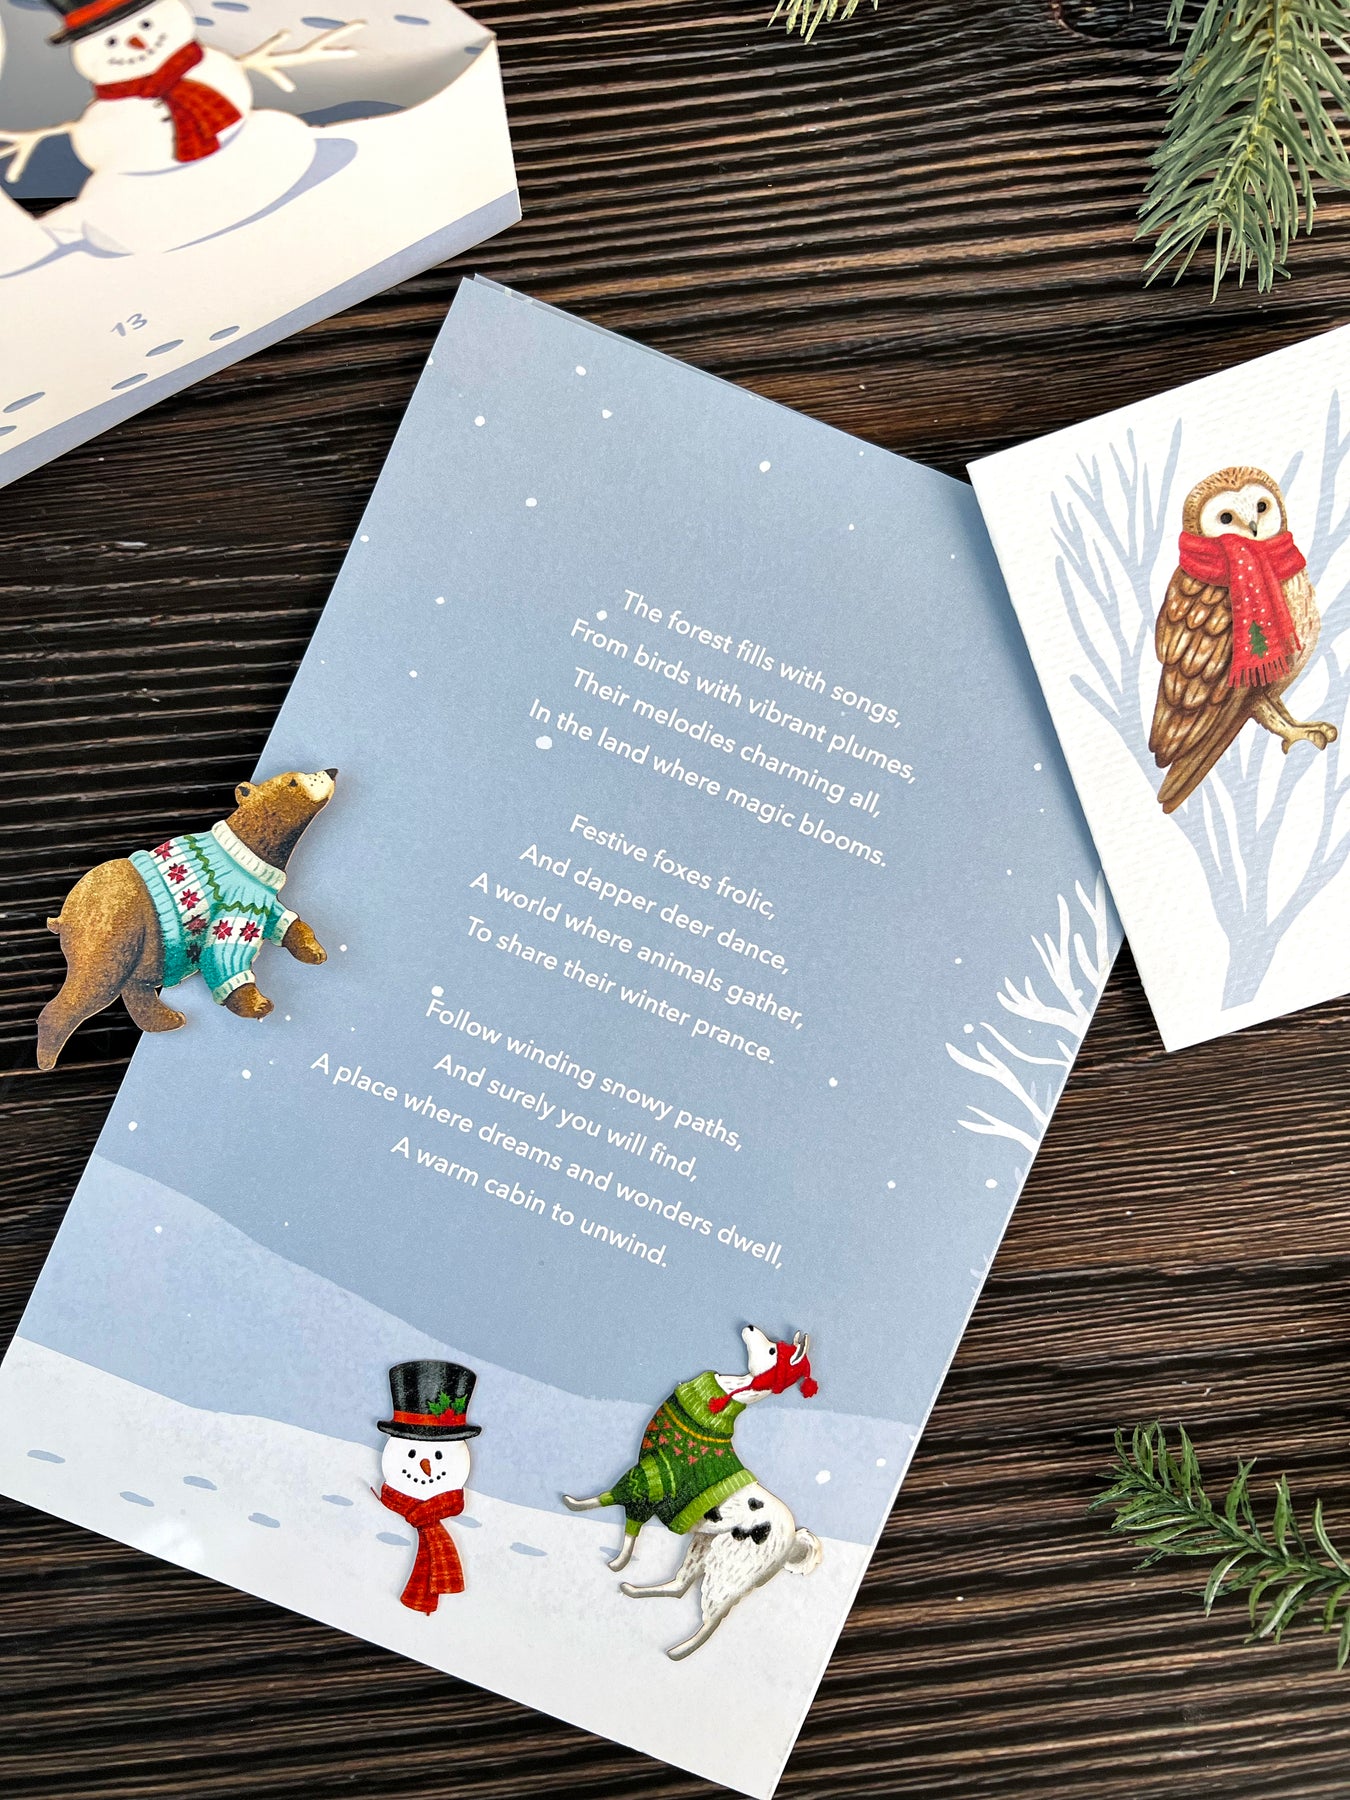 FreshCut Paper Woodland Wonderful Advent Calendar 3D Greeting Card